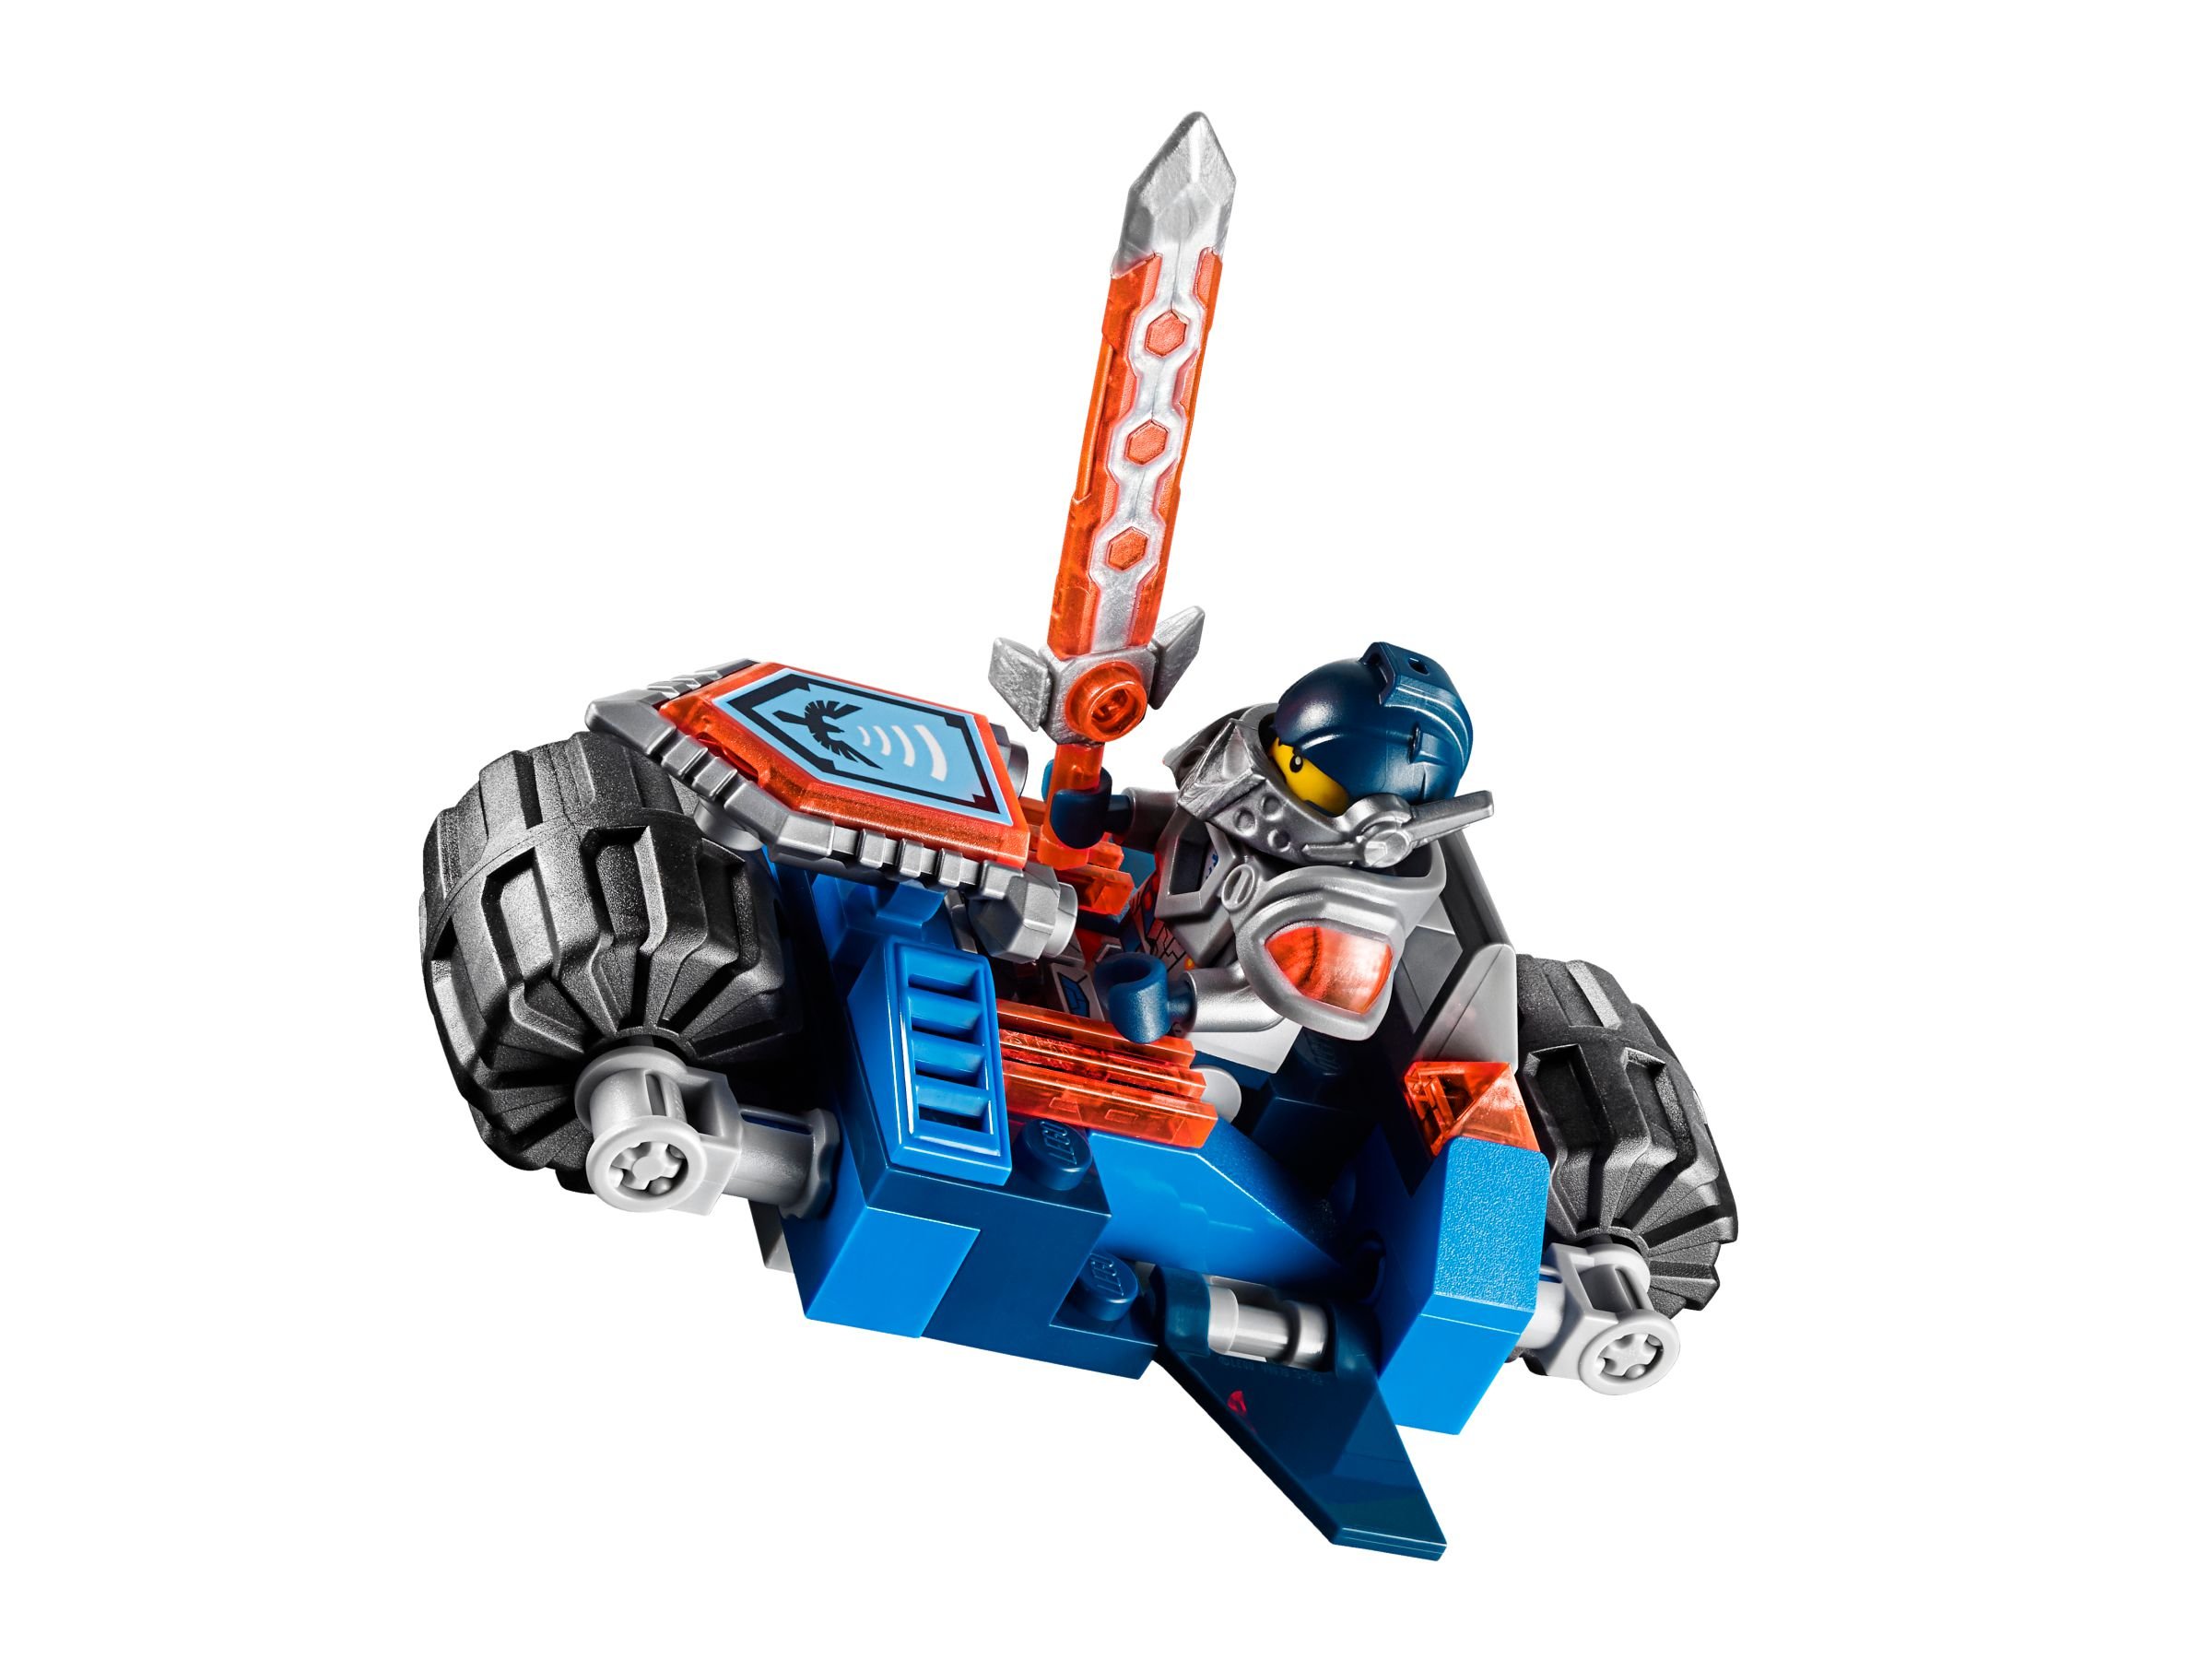 LEGO Nexo Knights 70317 Fortrex – Die rollende Festung LEGO_70317_alt8.jpg